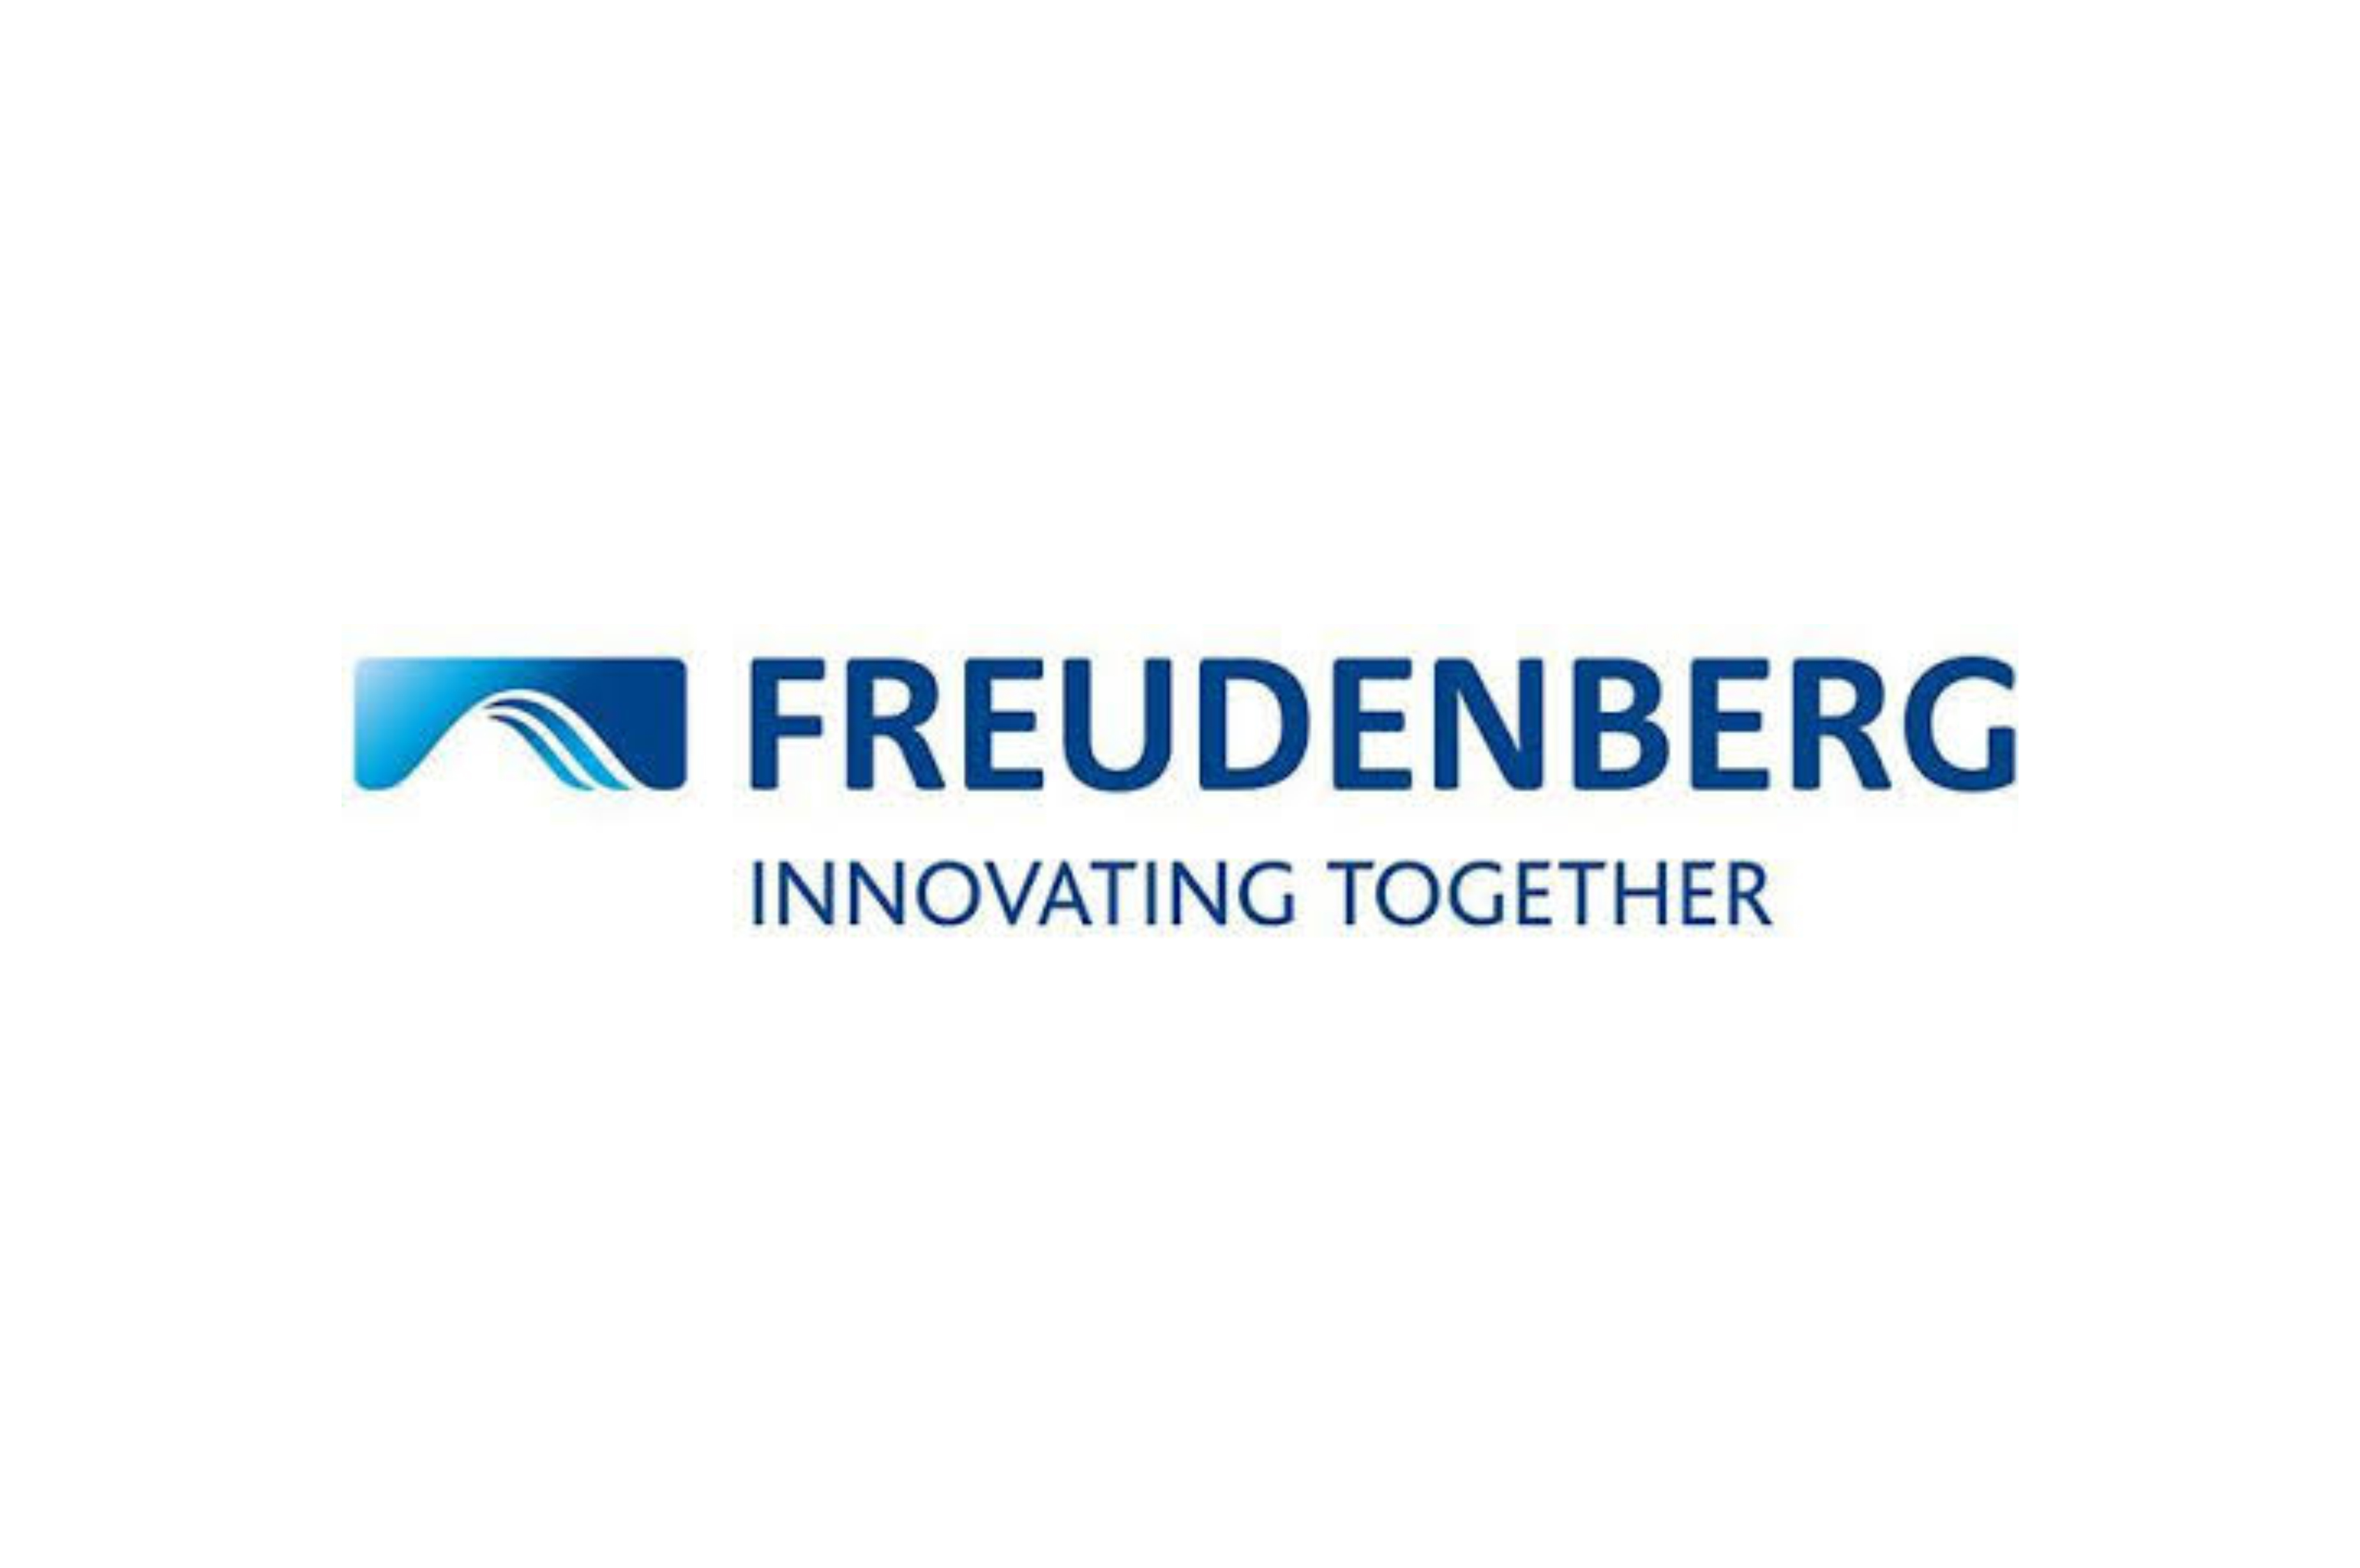 The brands FREUDENBERG SEALING TECHNOLOGIES